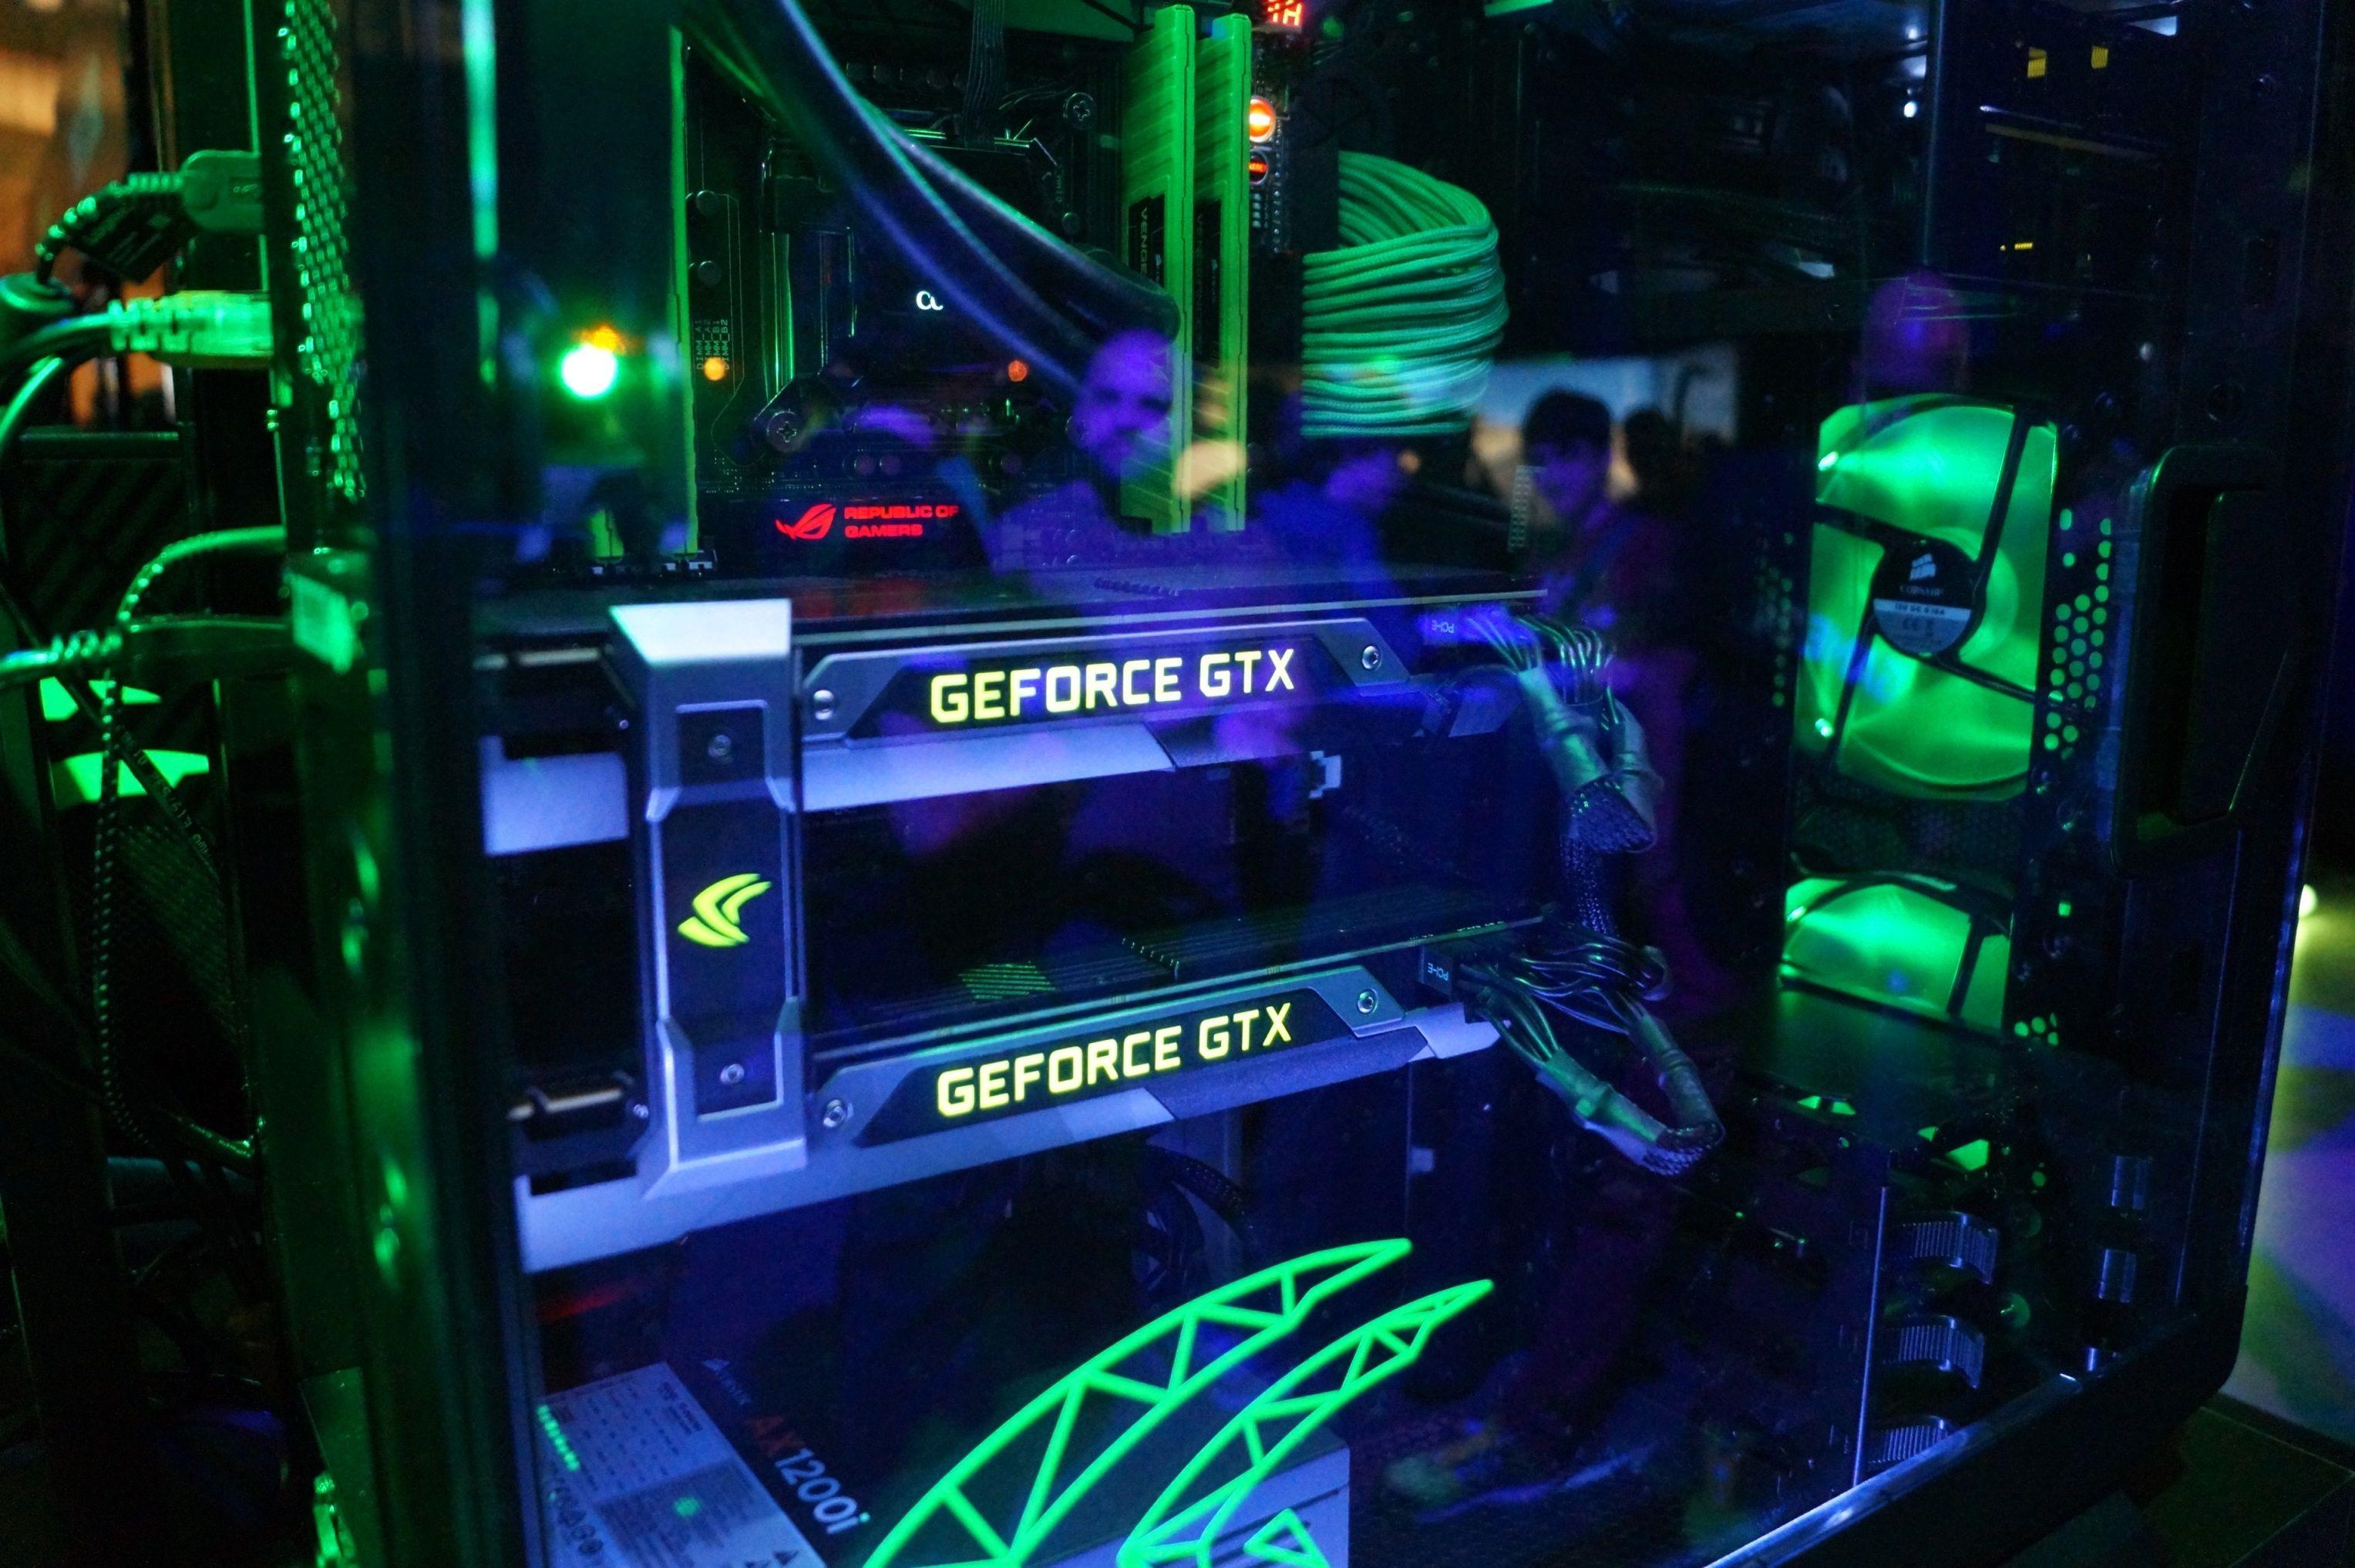 Nvidia announces GTX 970 and GTX 980 graphics cards, proves lunar